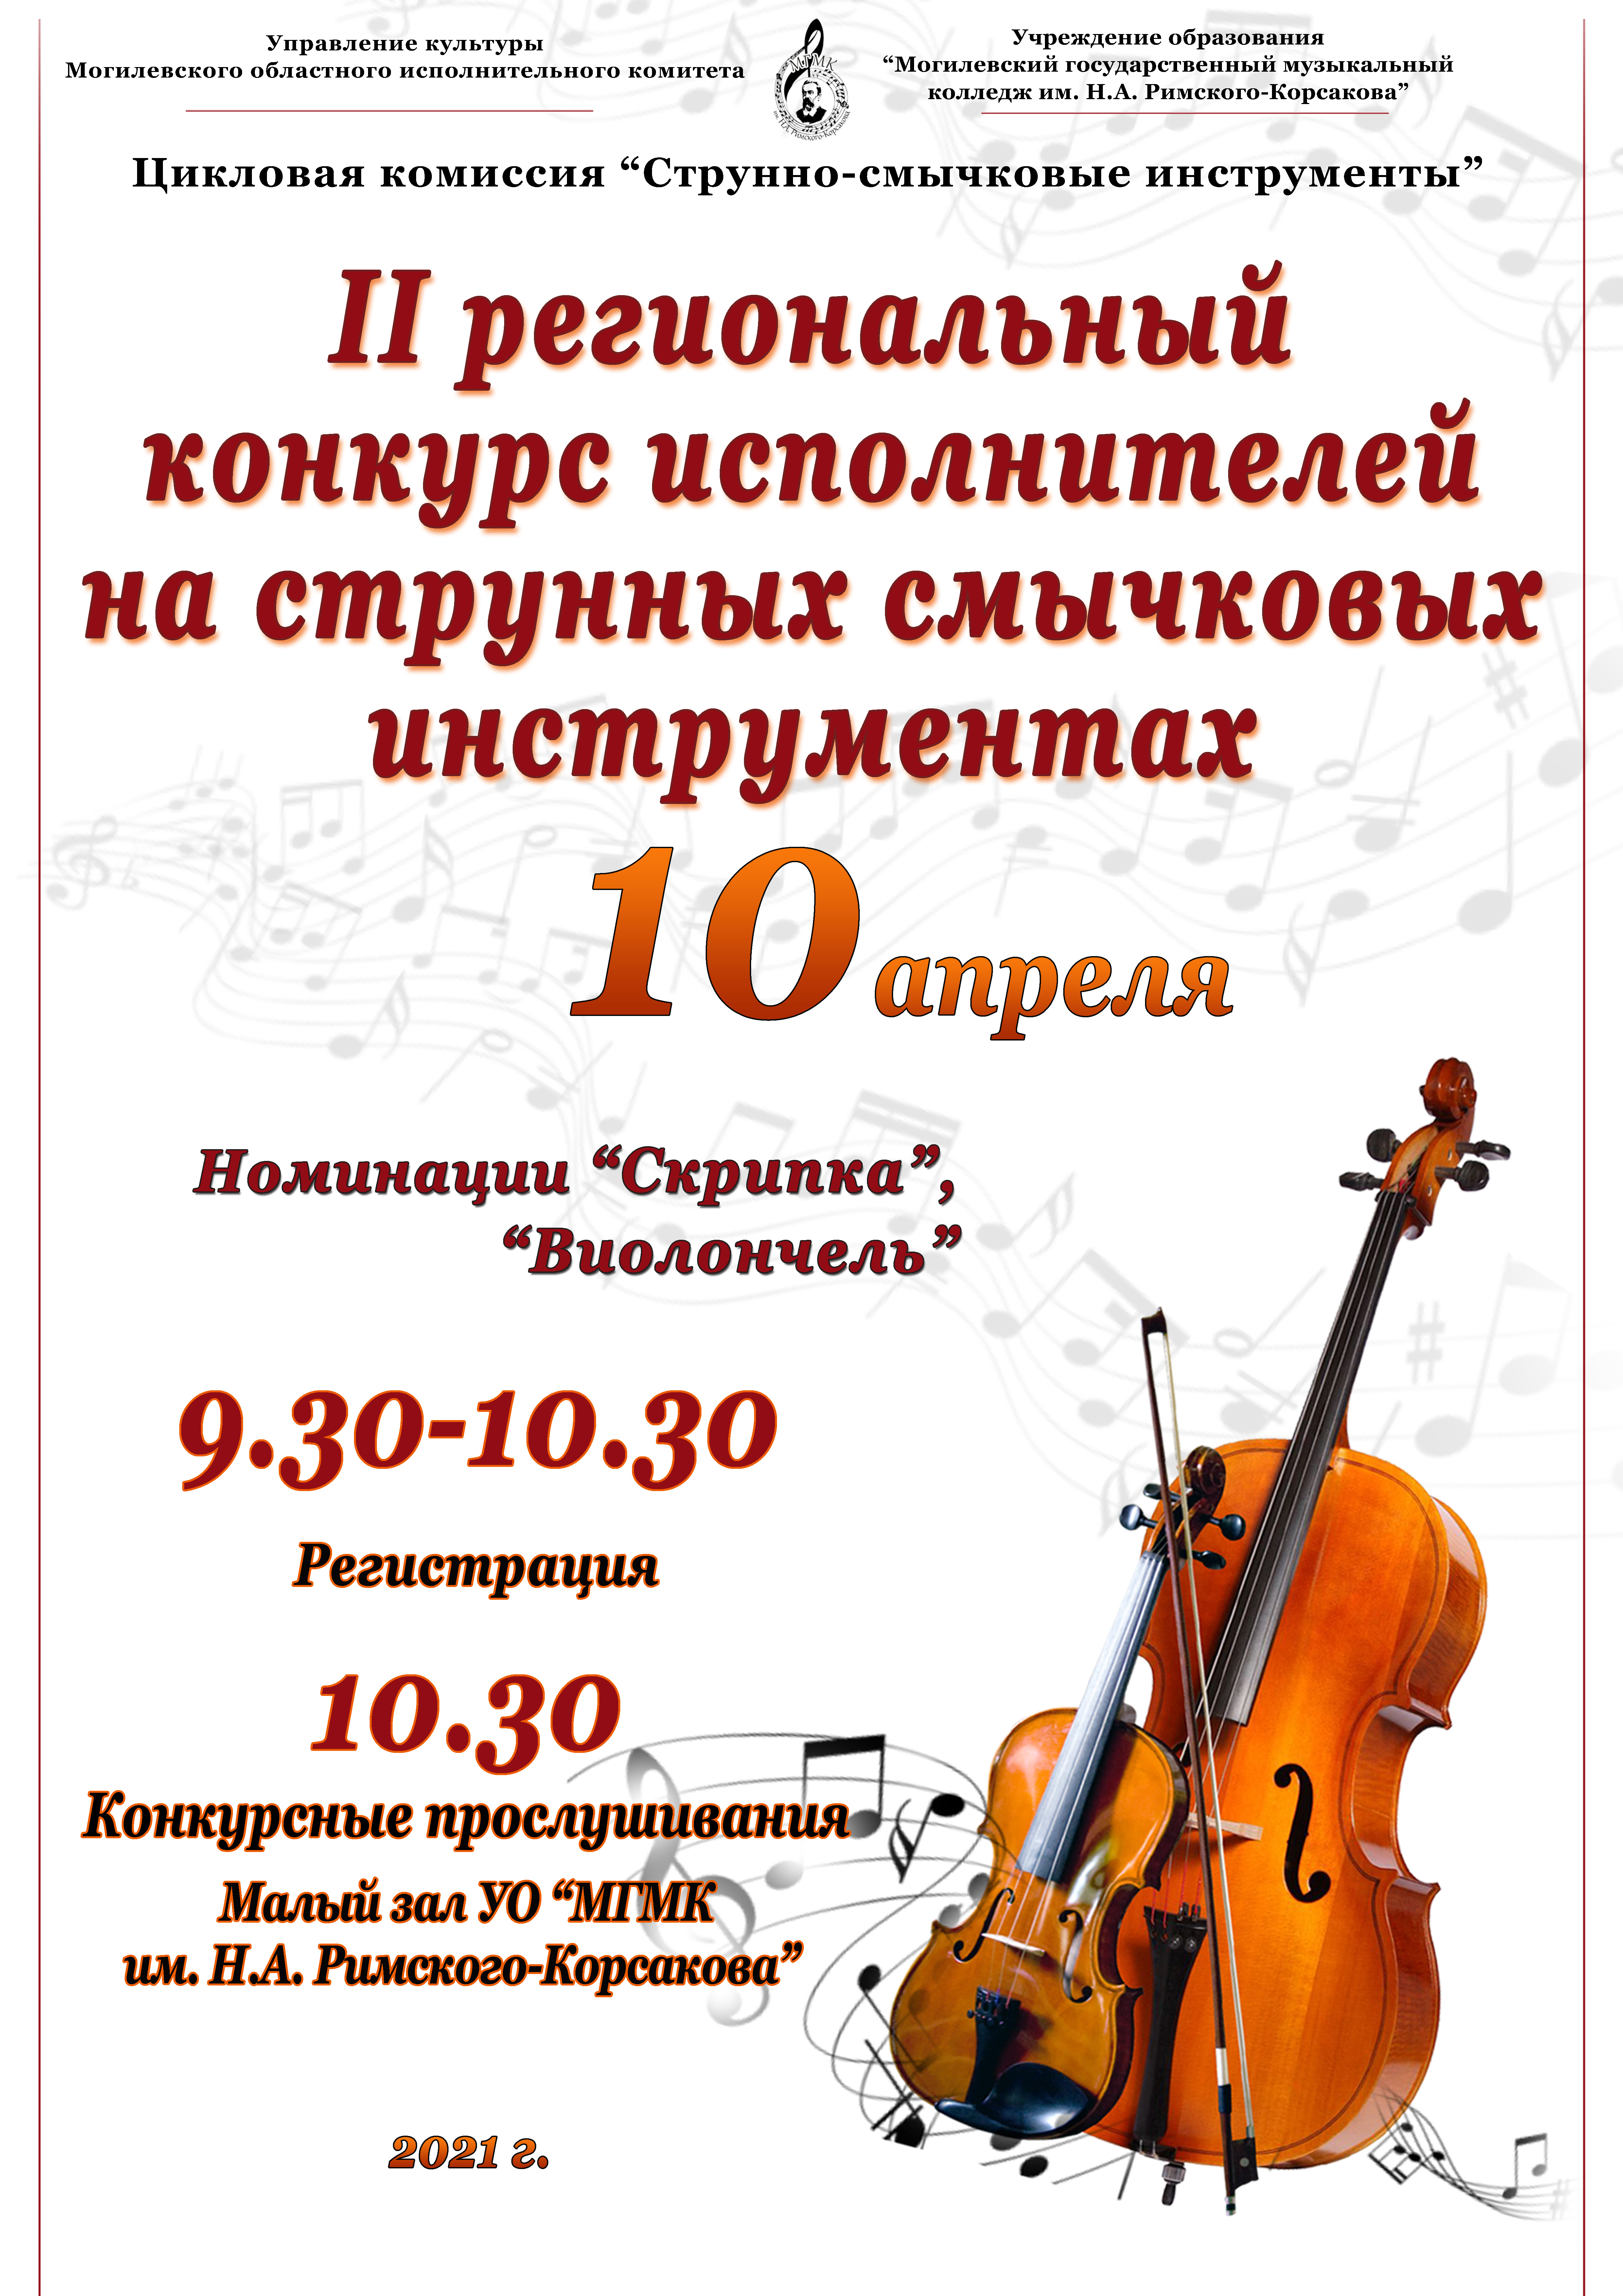 Большой московский конкурс исполнителей на струнных инструментах